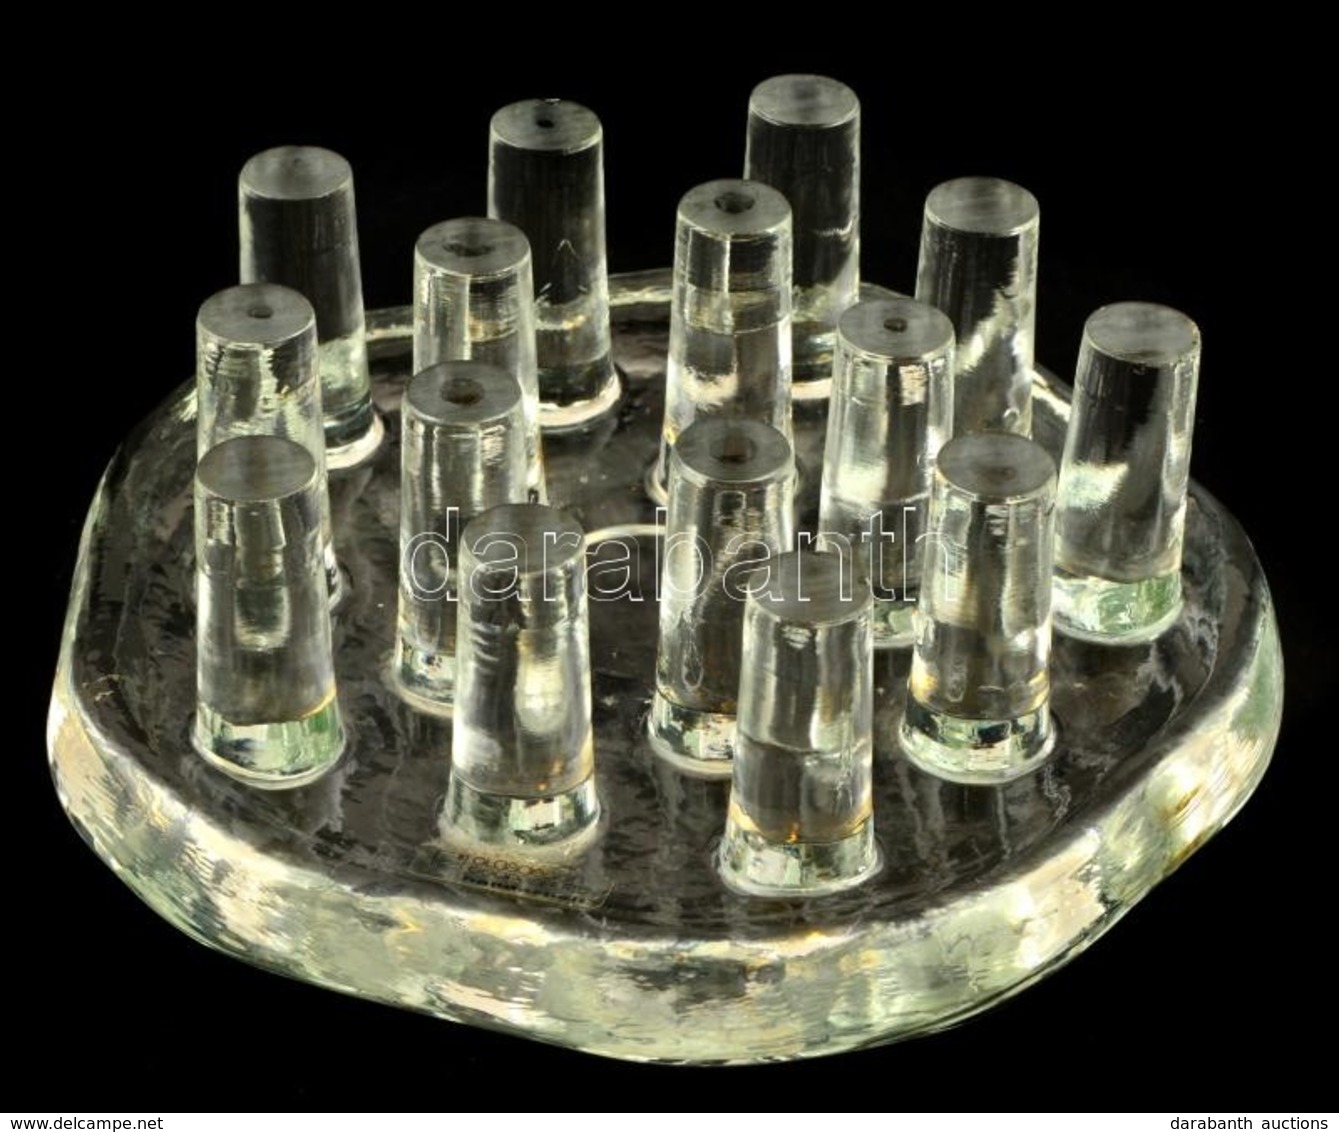 Georg Shutte Kézi Készítésű üveg Lábostartó, Jelzett. D: 19 Cm - Verre & Cristal